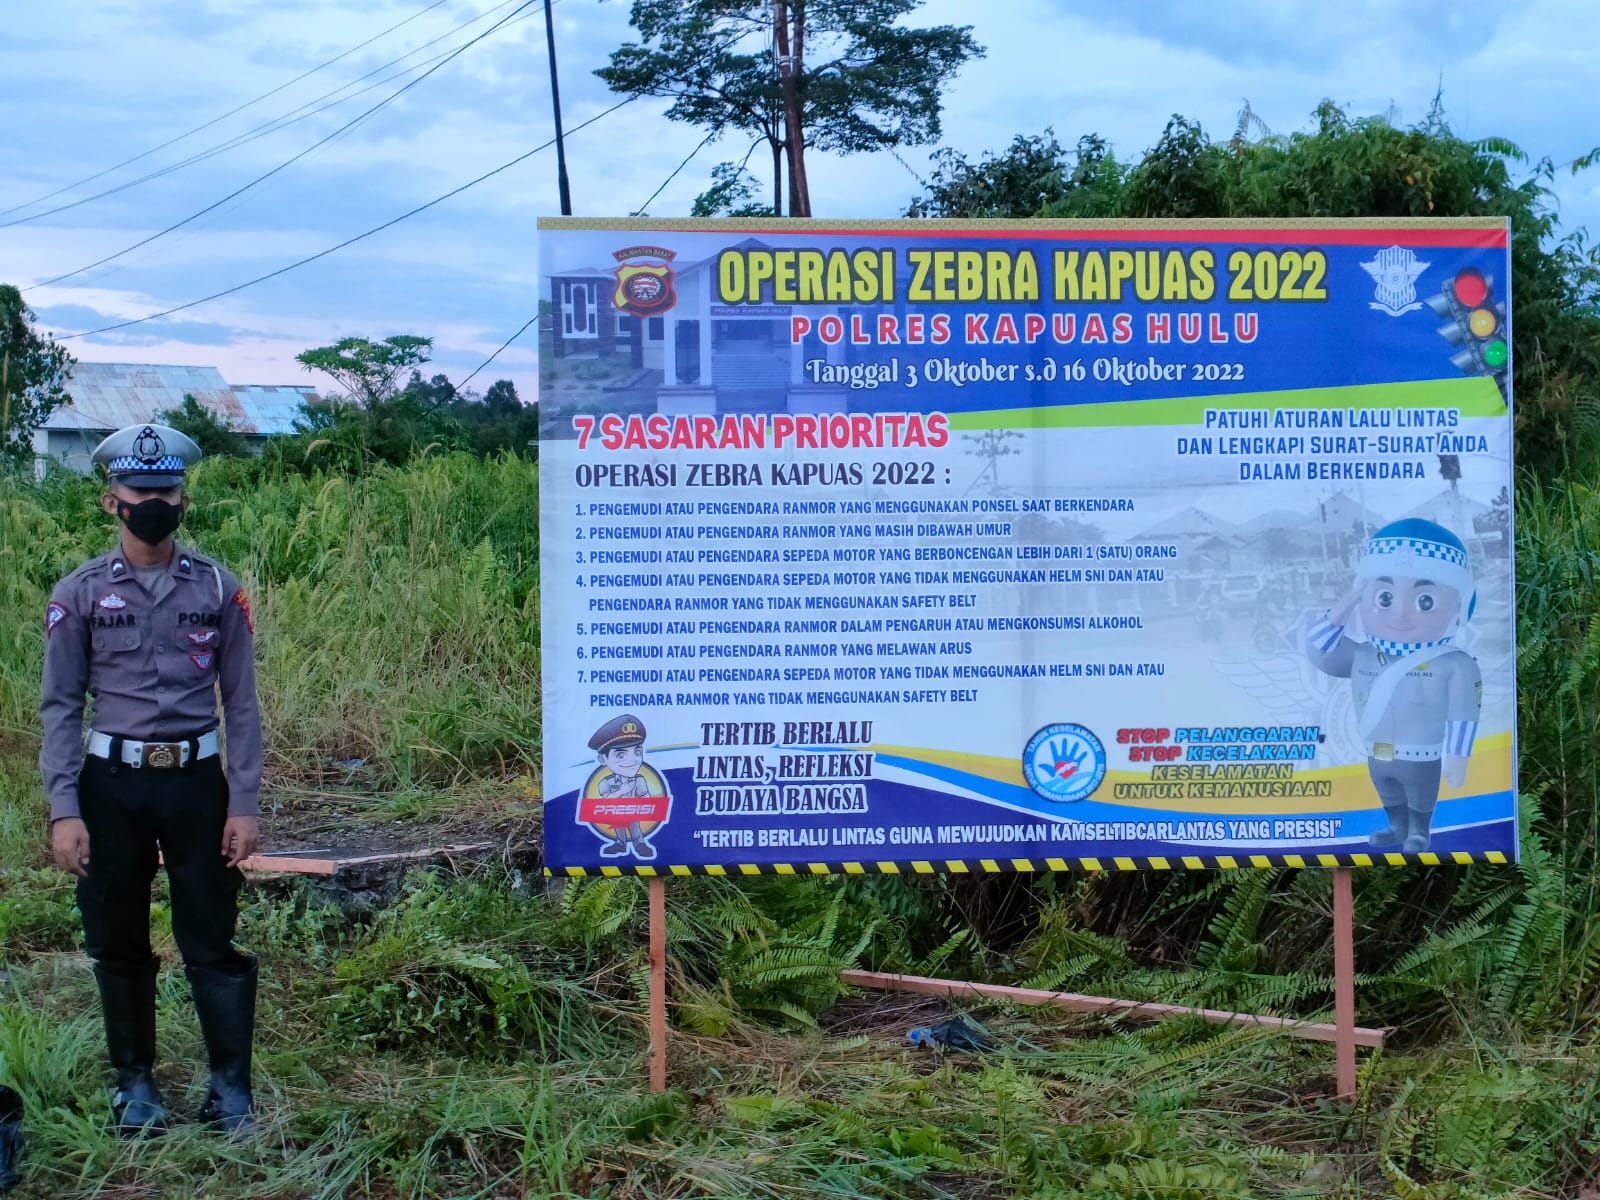 Spanduk imbauan yang berisi pemberitahuan akan dilaksanakannya Operasi Zebra Kapuas 2022 dan sasaran prioritas pelanggaran. (Foto: Ishaq)